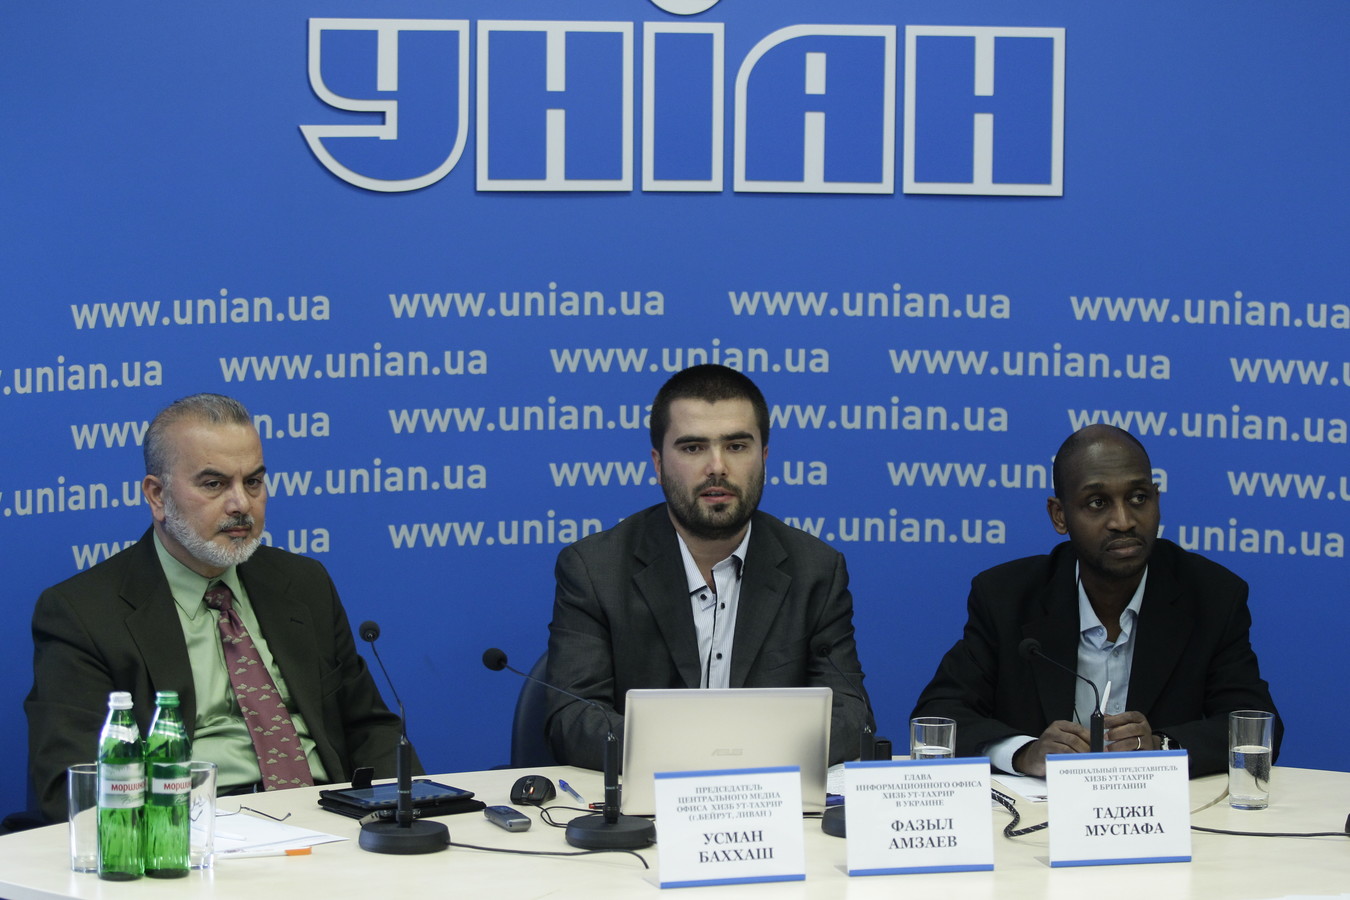 Фазыл Амзаев, Осман Баххаш и Таджи Мустафа  рассказали о форуме Хизб ут-Тахрир, который проходил 7-8 октября 2013 г. в г.Симферополь.